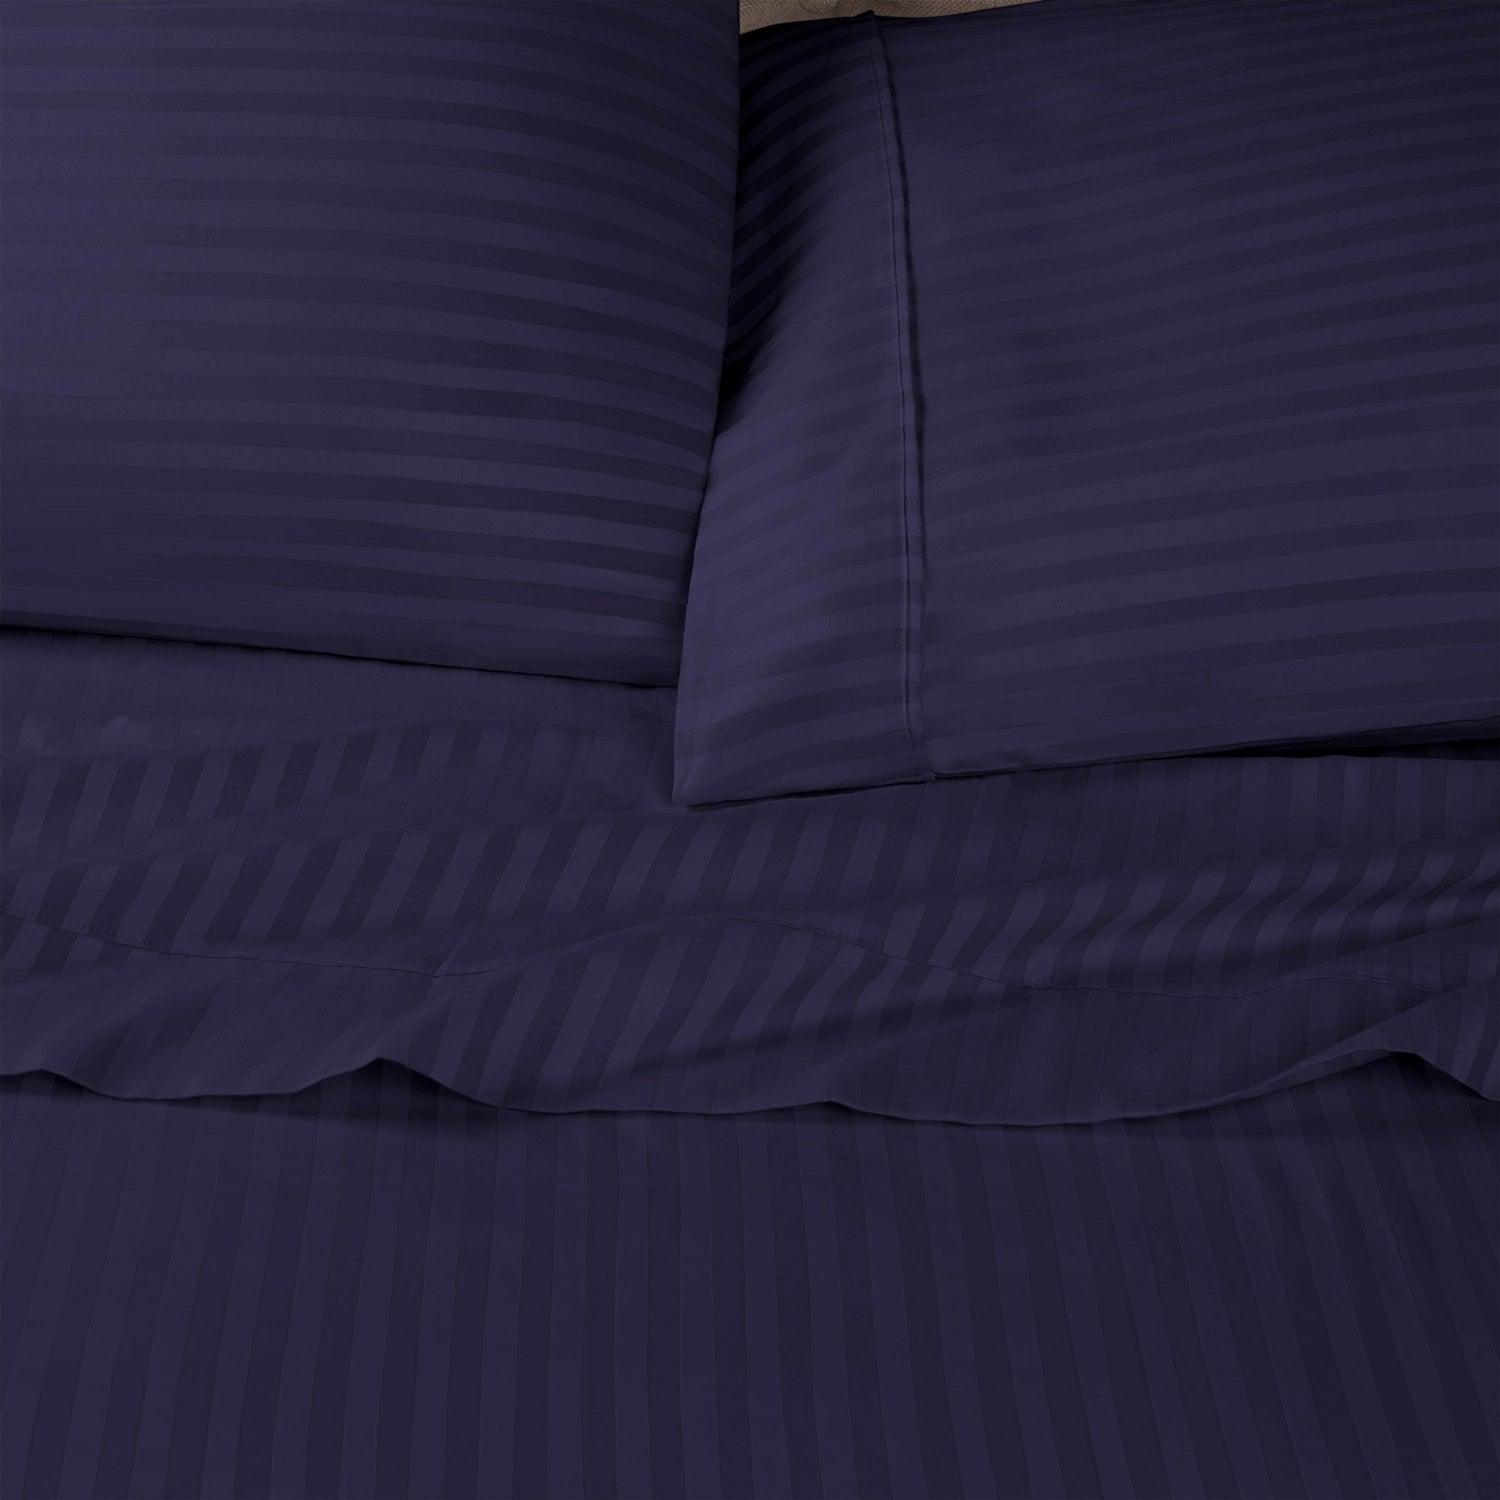 Premium 600 Thread Count Egyptian Cotton Striped Pillowcase Set - Navy Blue